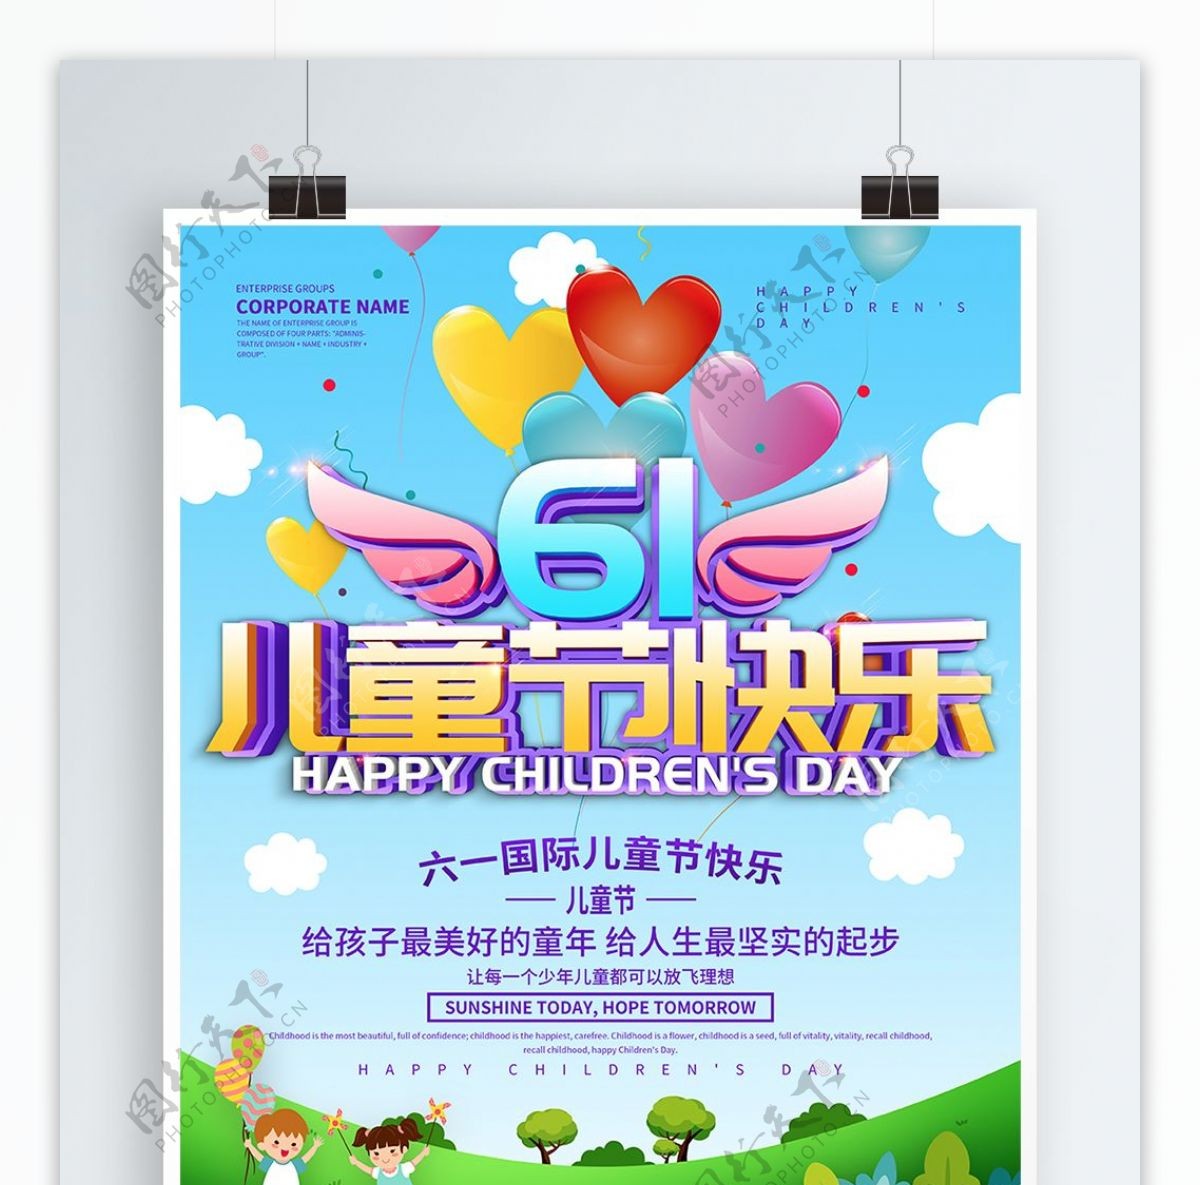 蓝色小清新61儿童节快乐海报设计